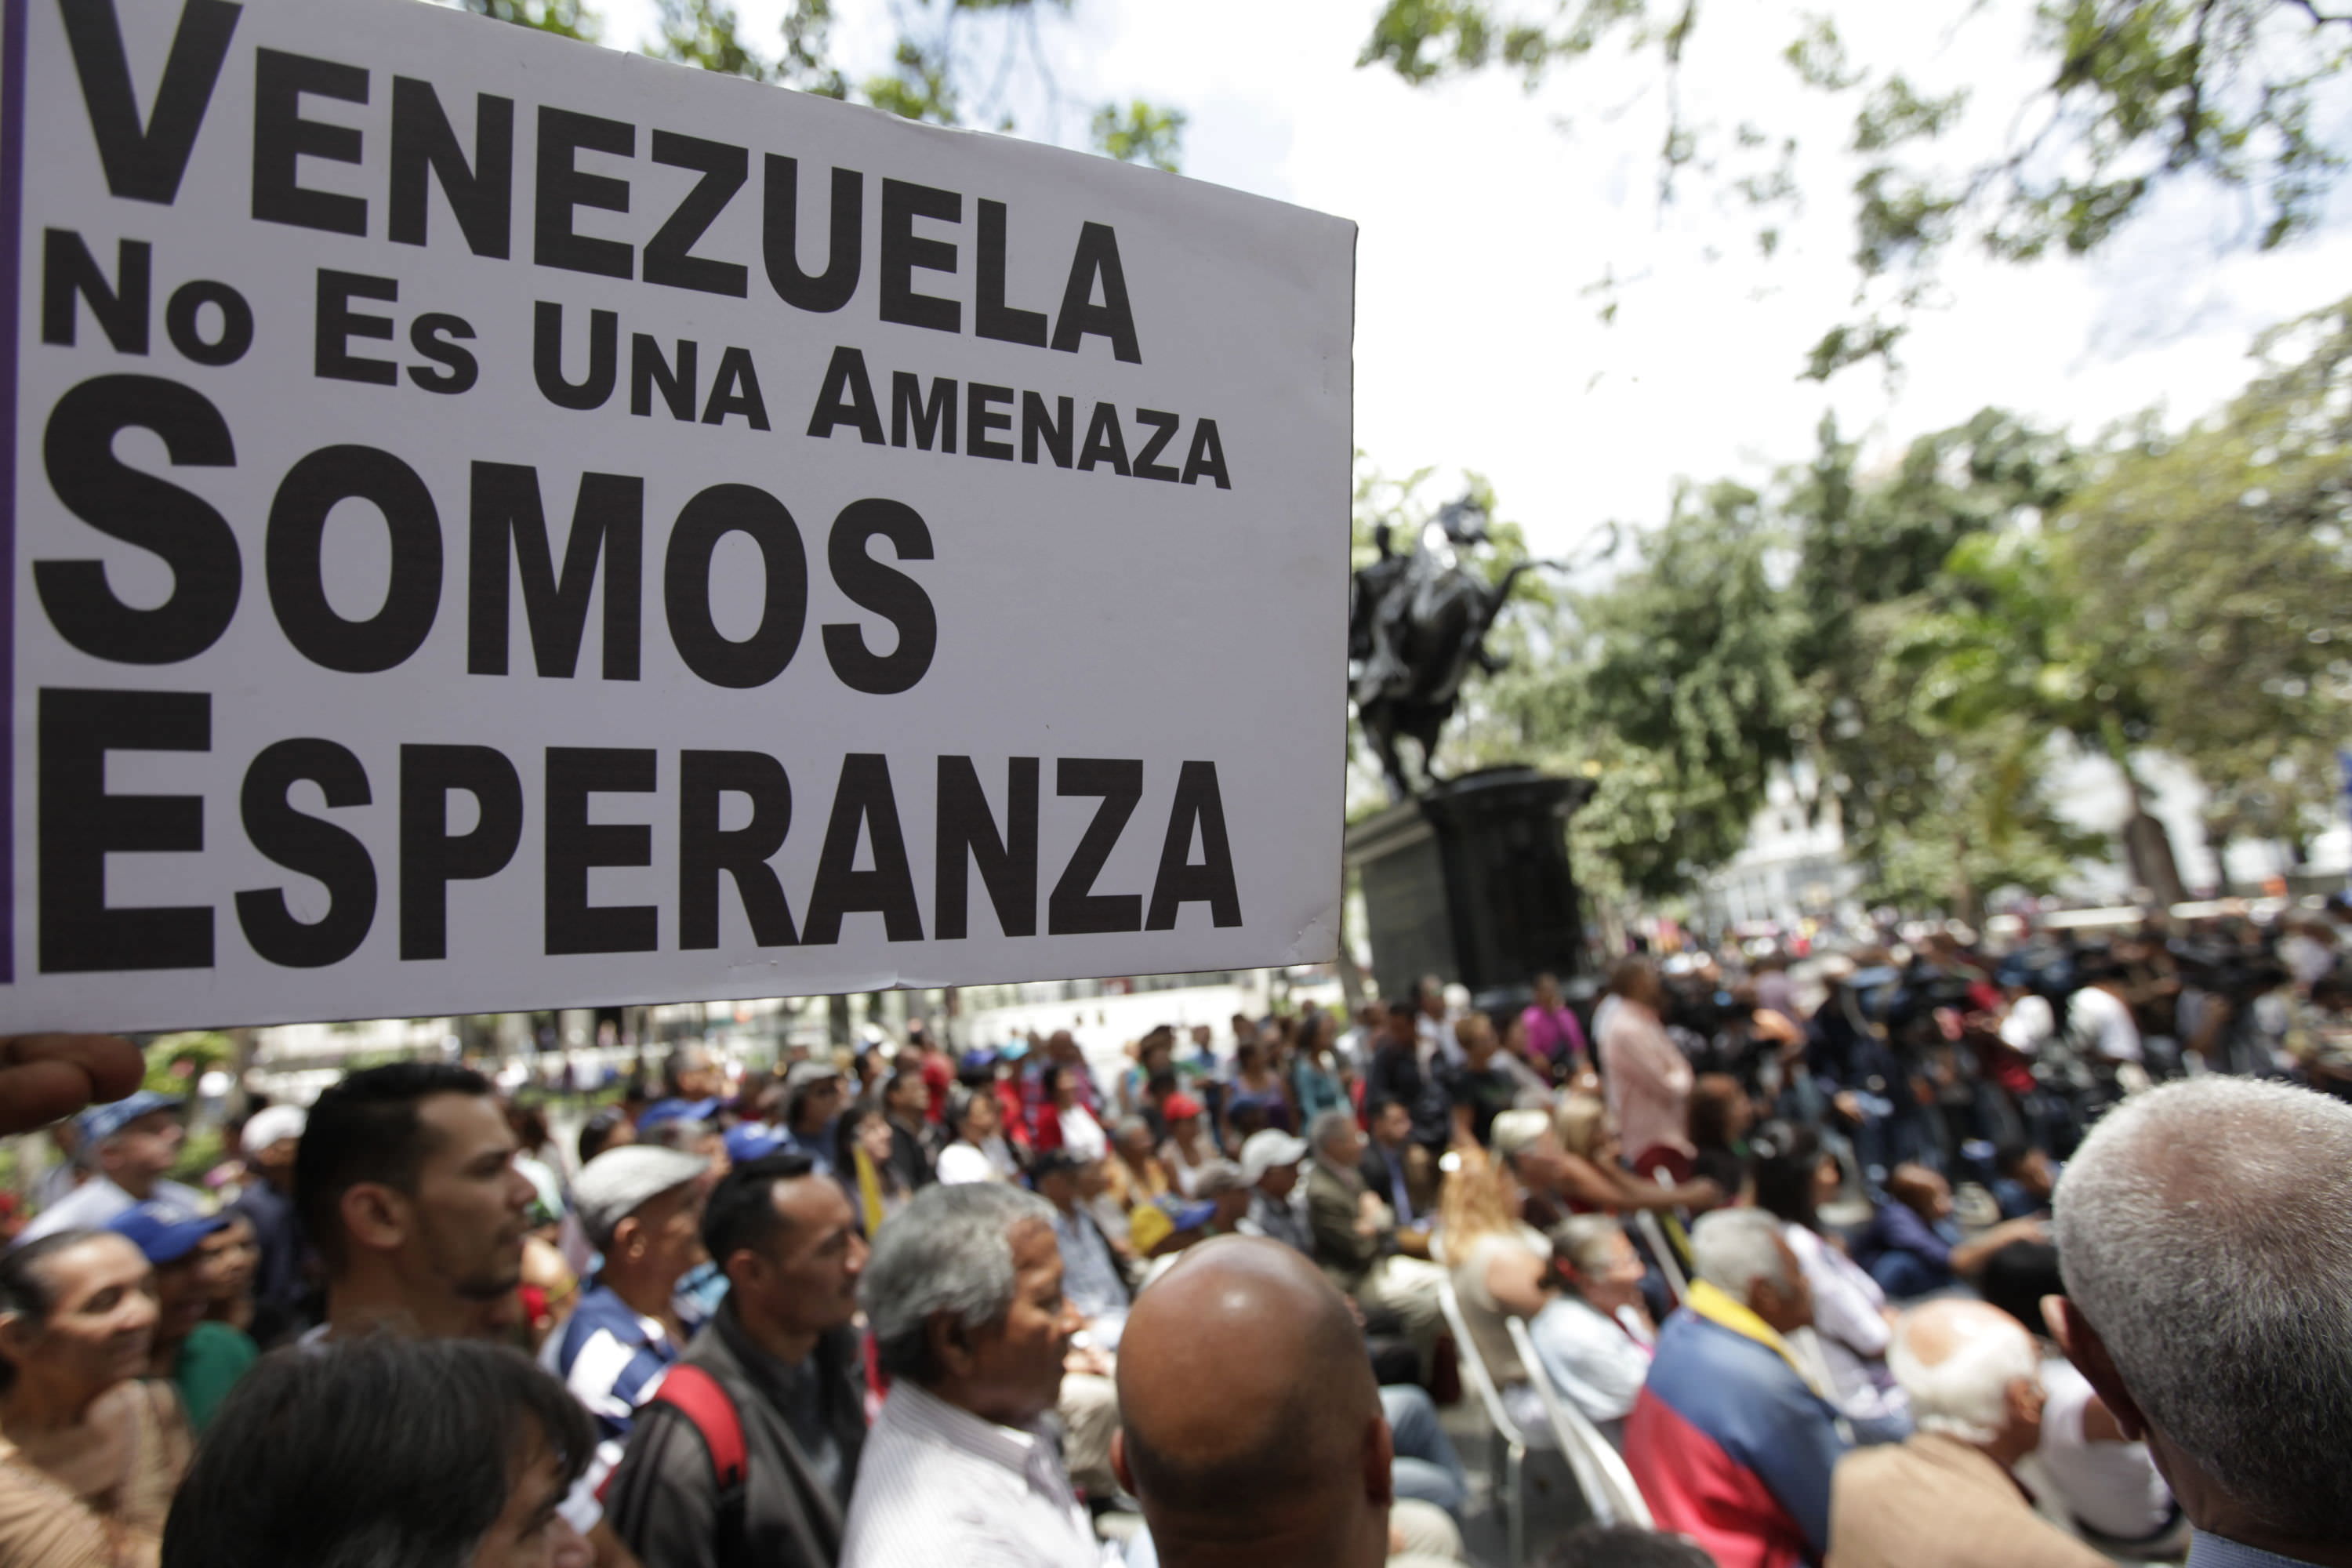 El Gobierno de Venezuela anunció que denunciará a Almagro ante la ONU por sus acciones intervencionistas. (Foto Referencial)